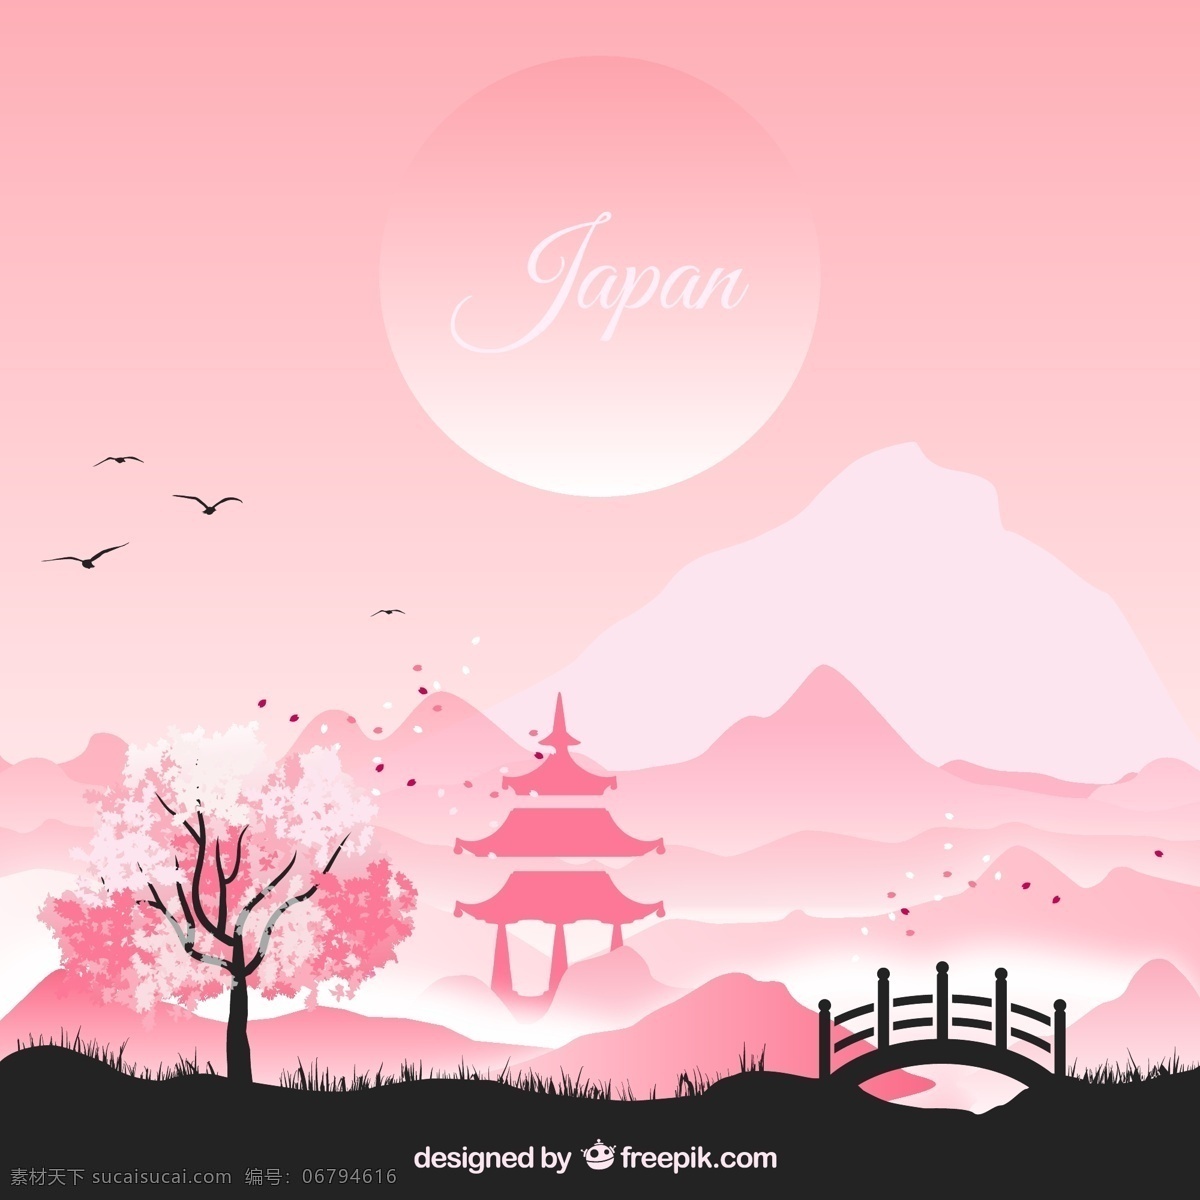 日式 风格 粉色 风景 插画 手绘插画 粉色主题 日本风景 剪影 桥 寺庙 树 山 太阳 鸟 矢量素材